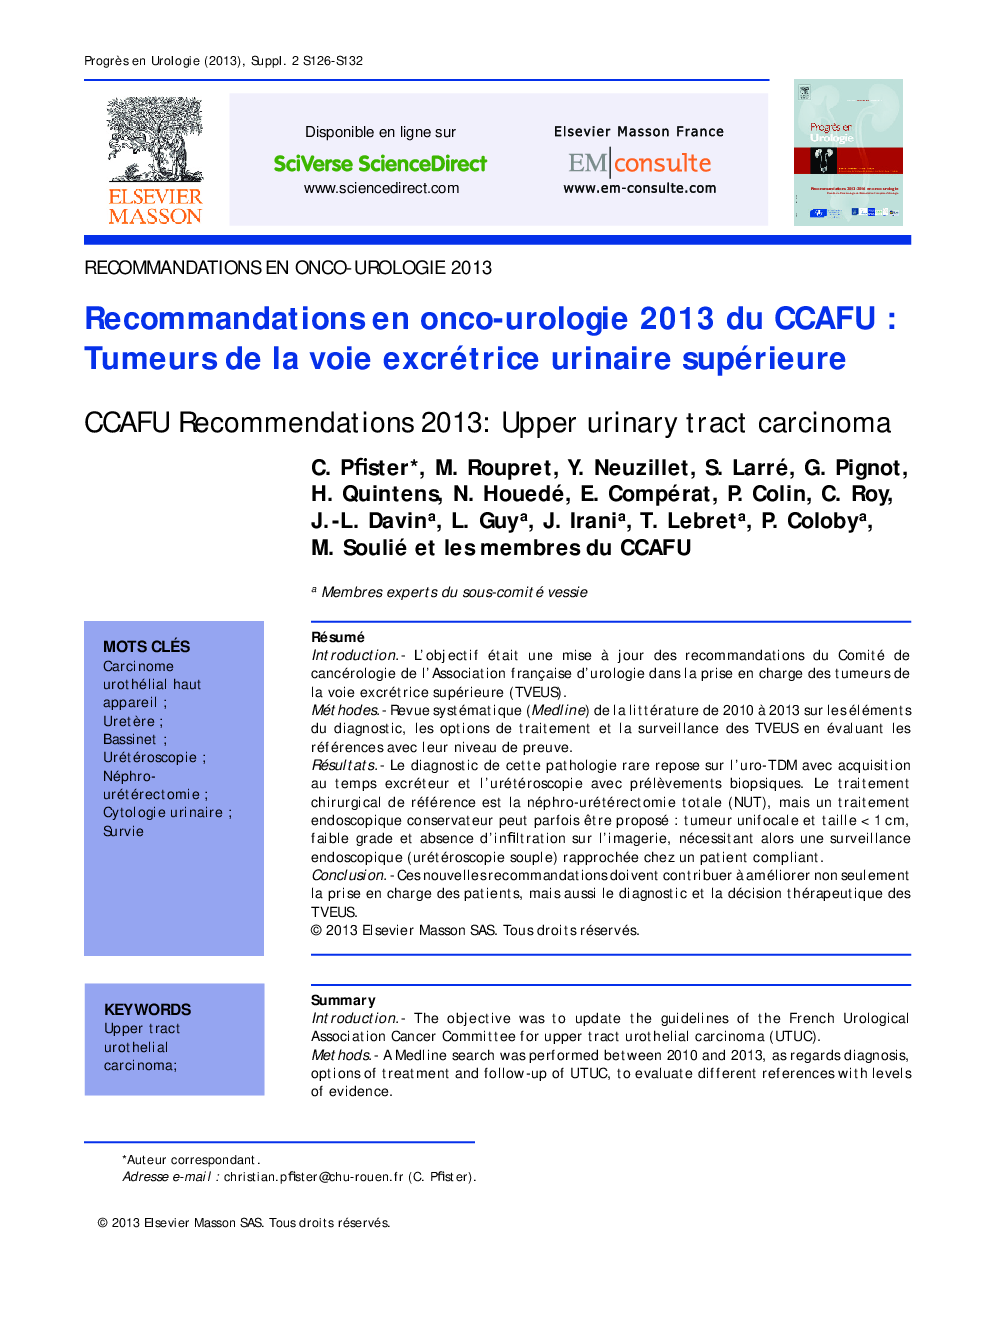 Recommandations en onco-urologie 2013 du CCAFU : Tumeurs de la voie excrétrice urinaire supérieure